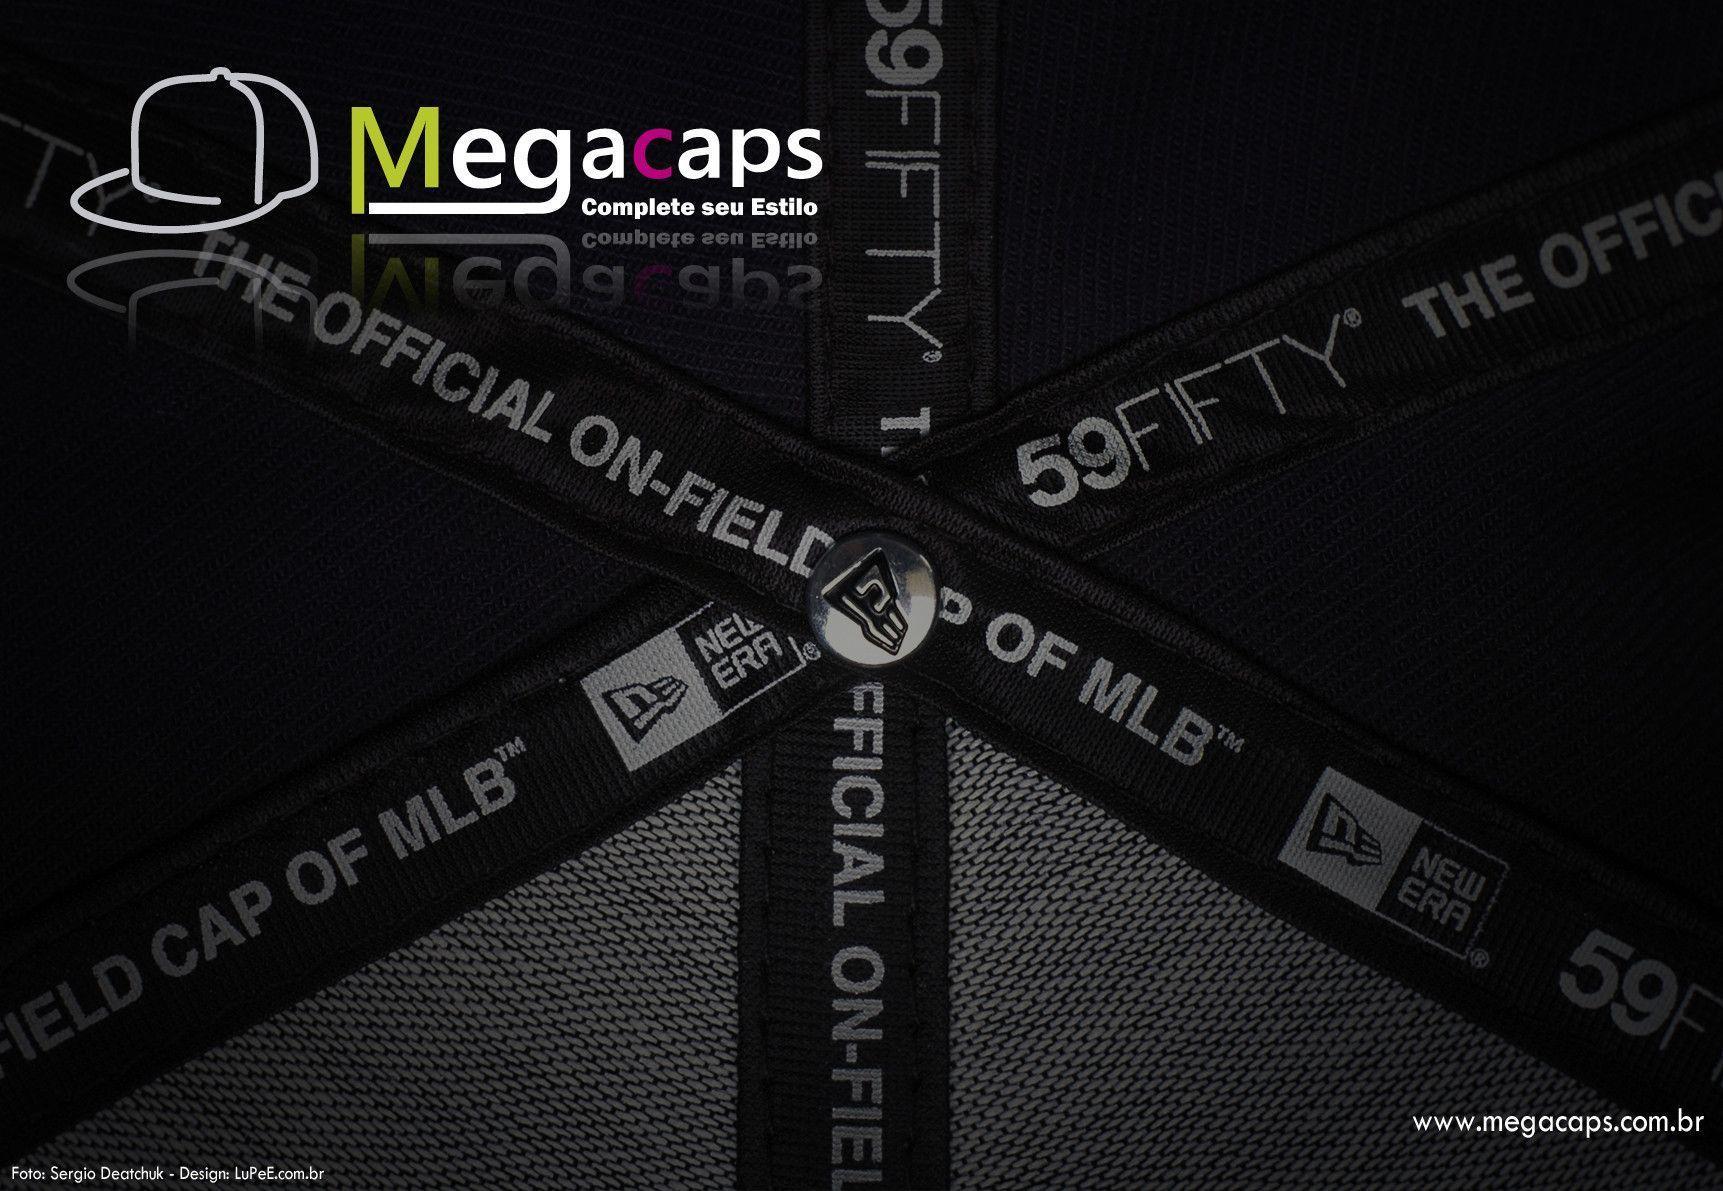 Megacaps Oficial: Wallpaper´s Mega Caps